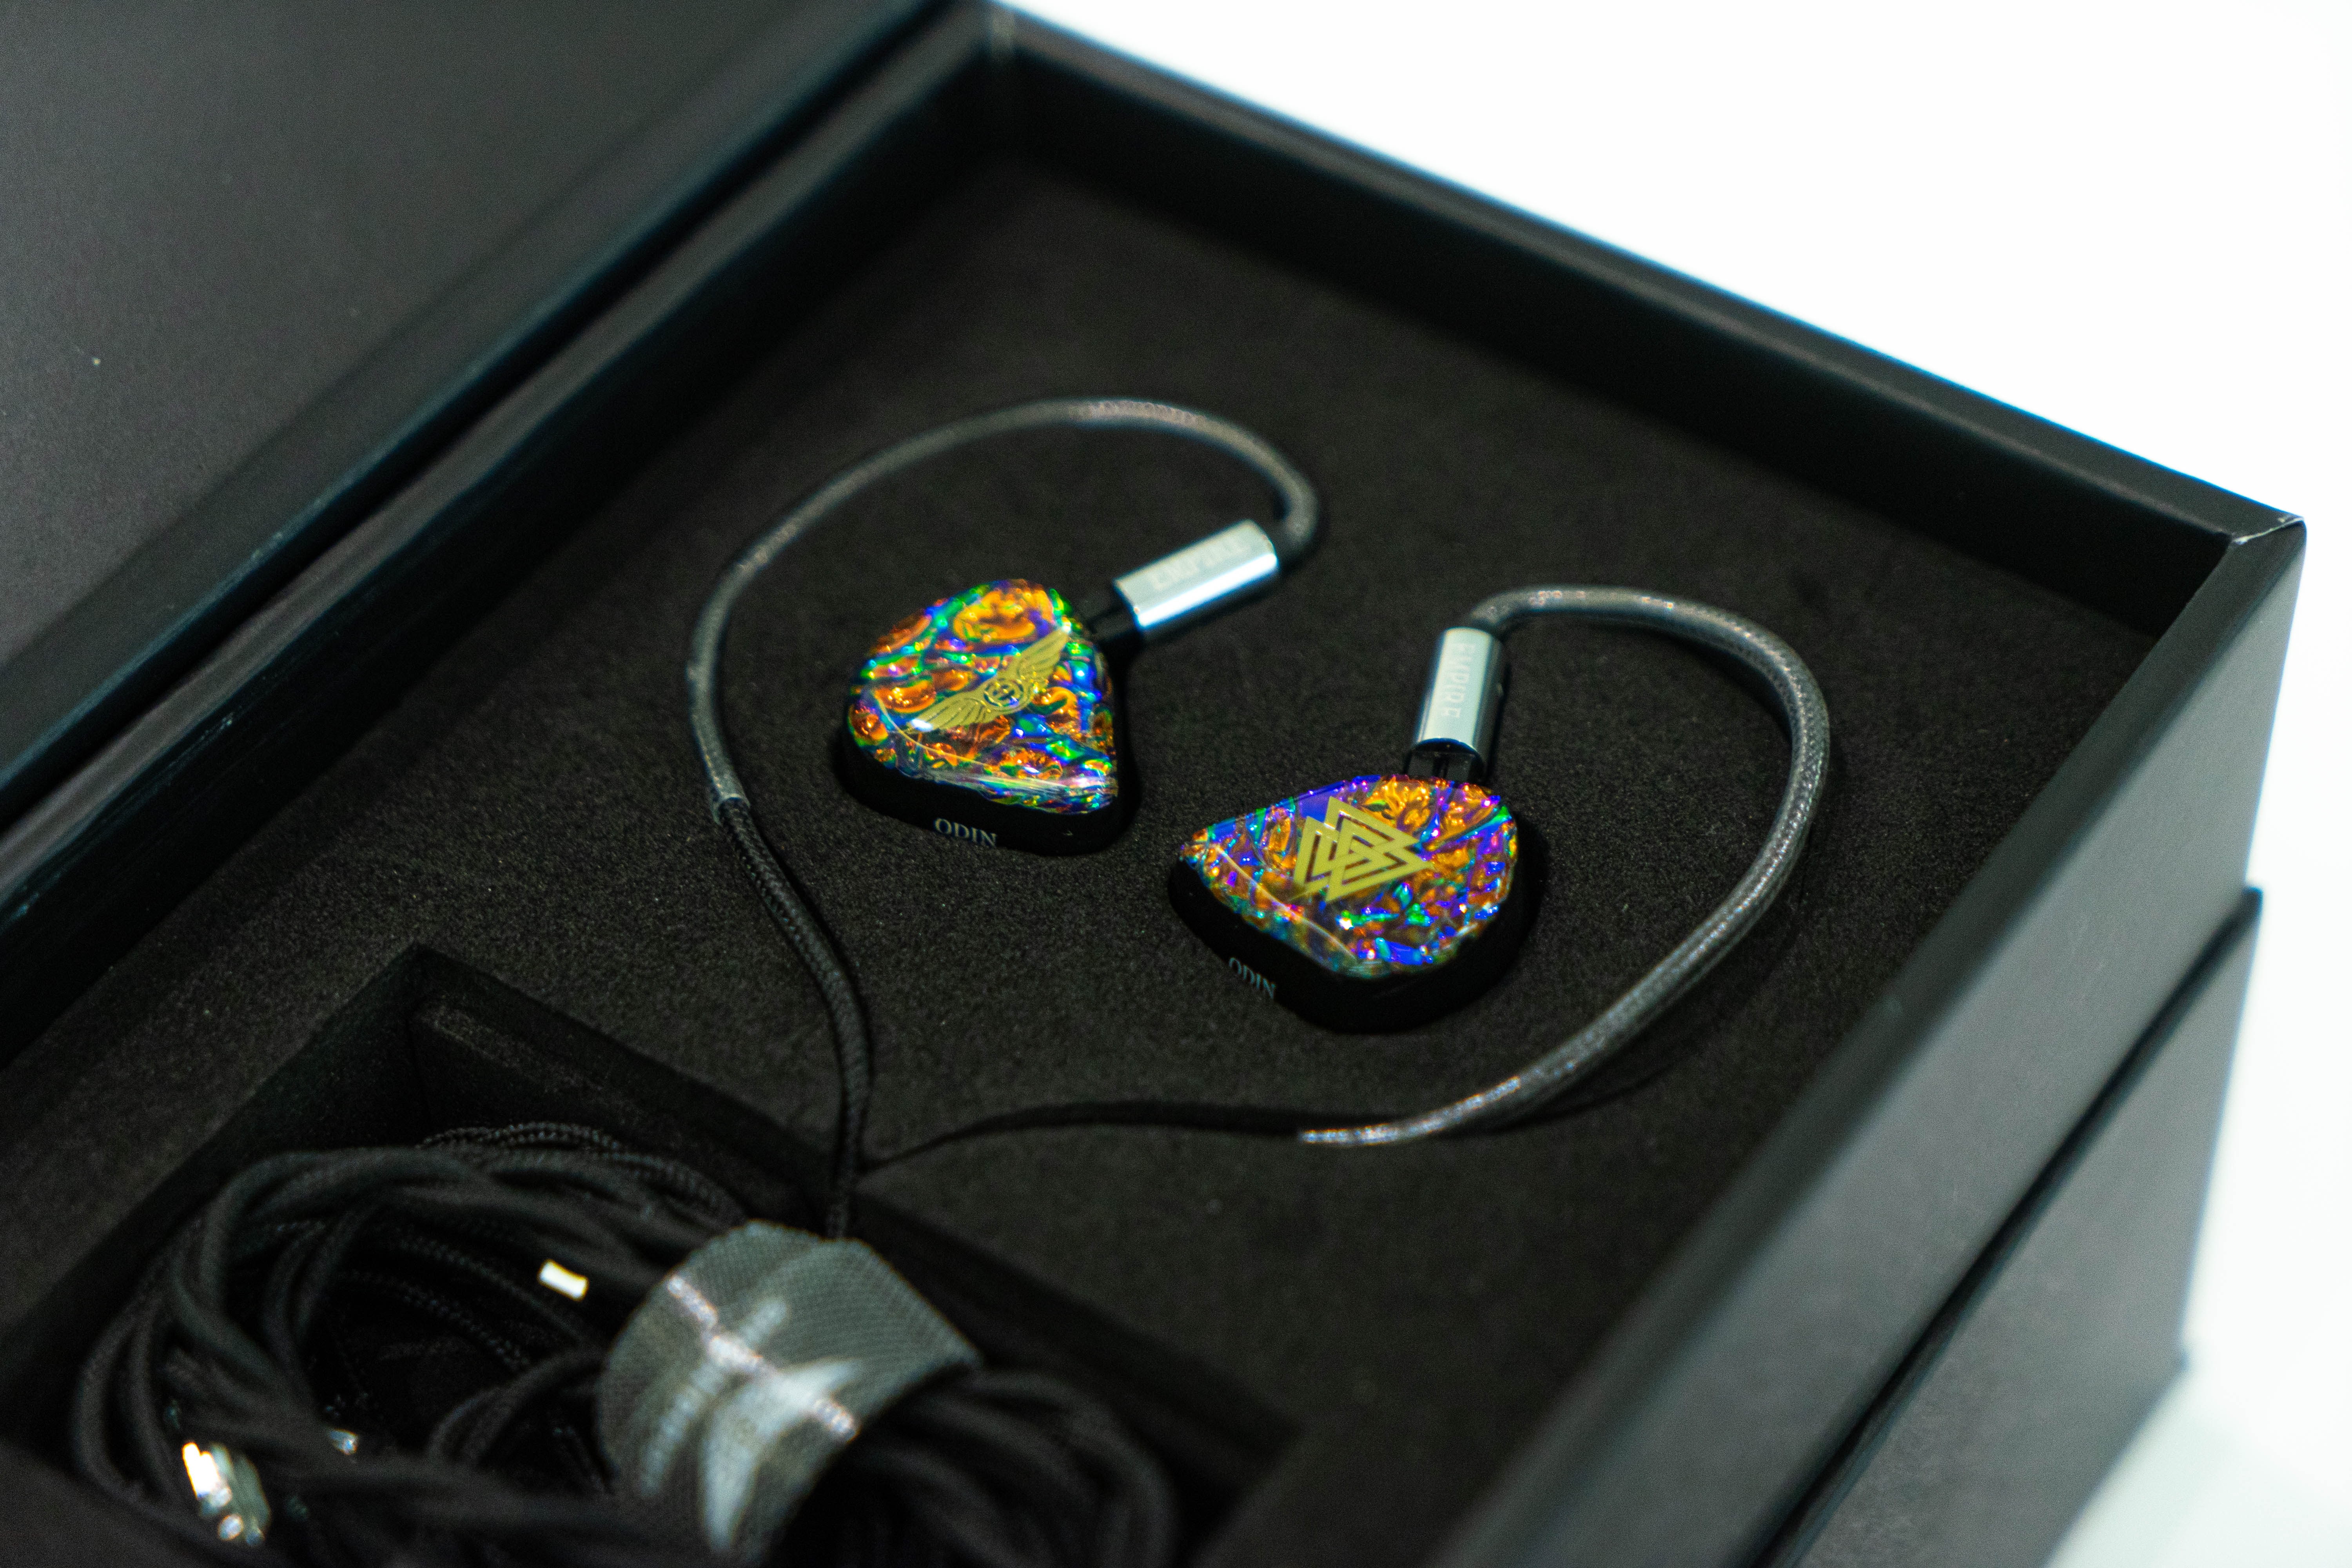 美國品牌 Empire Ears 推出全新旗艦耳機 ODIN 